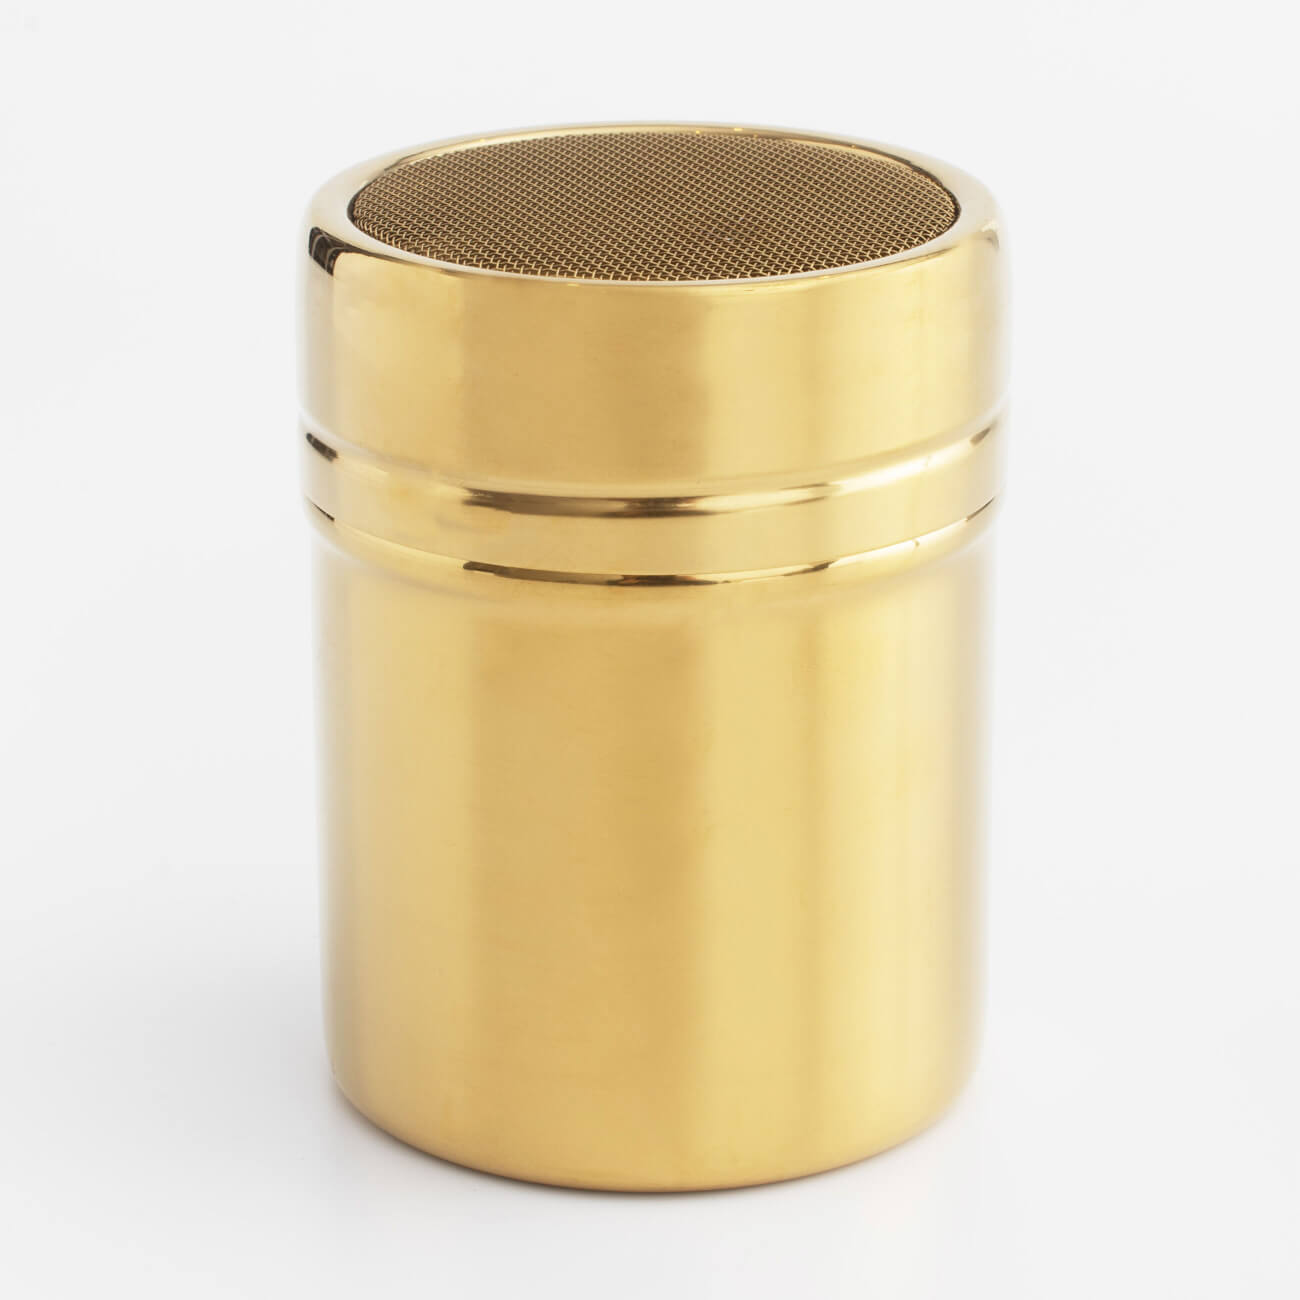 Сито-кружка, 9х7 см, с крышкой, сталь/пластик, золотистое, Classic gold сито кружка пластик 250 мл для муки и сахара y3 1048